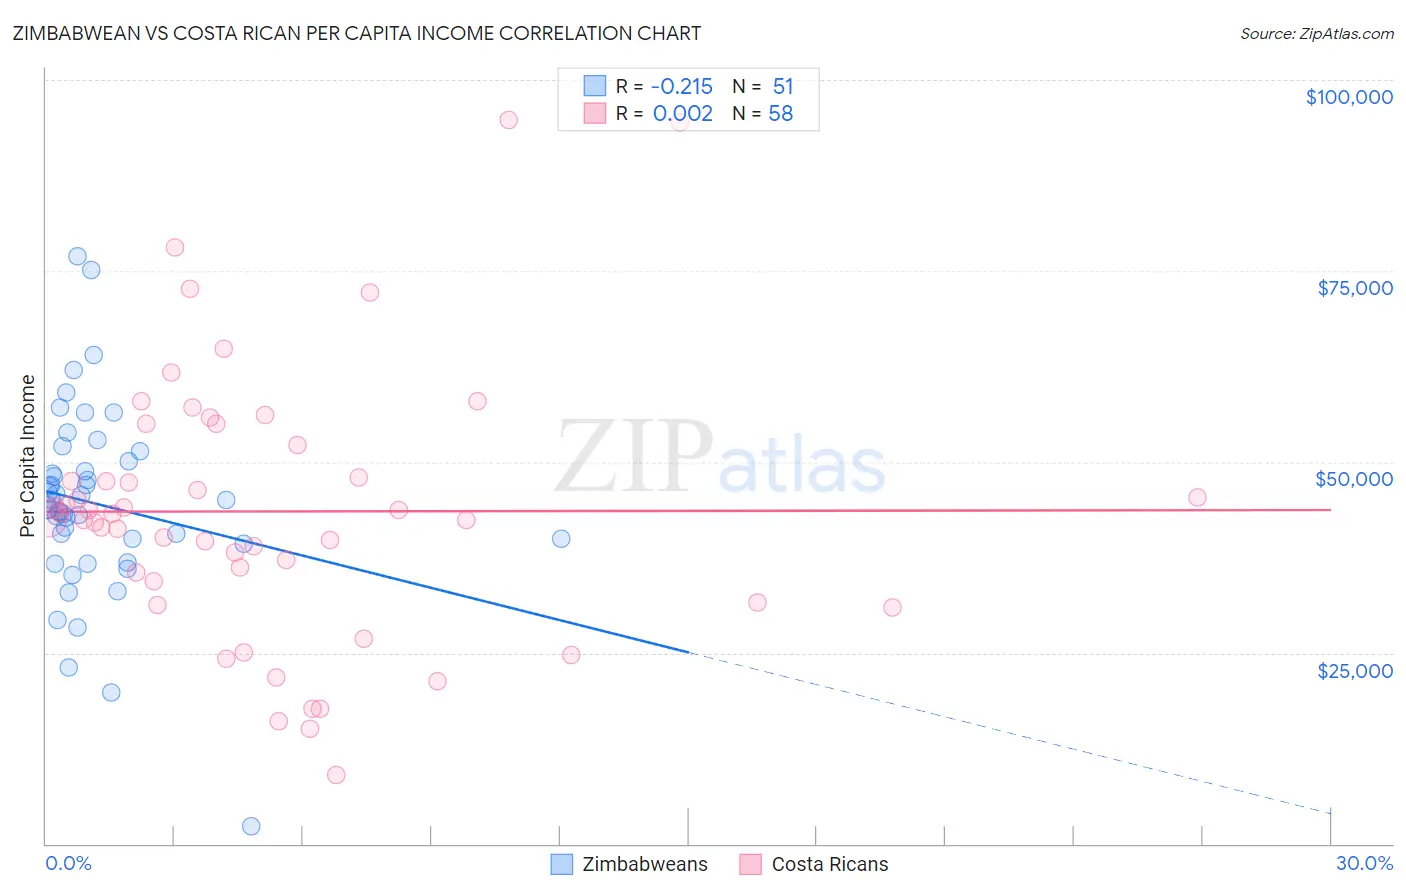 Zimbabwean vs Costa Rican Per Capita Income